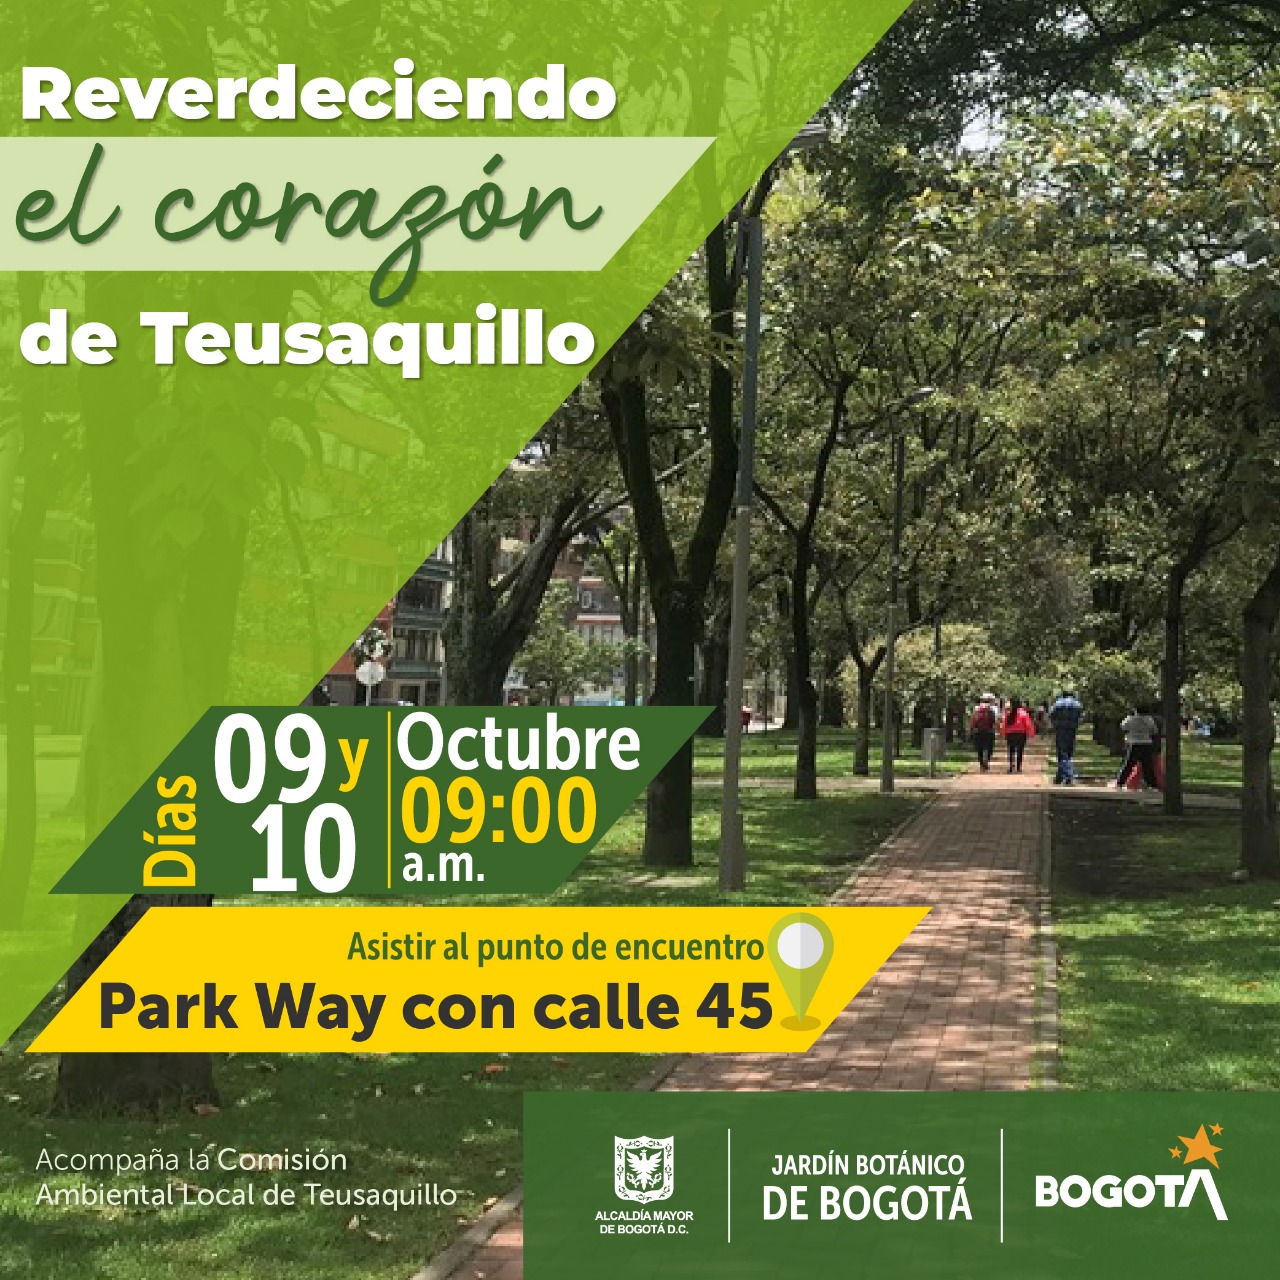 Jardín Botánico de Bogotá y comunidad: juntos Reverdeciendo el corazón de Teusaquillo